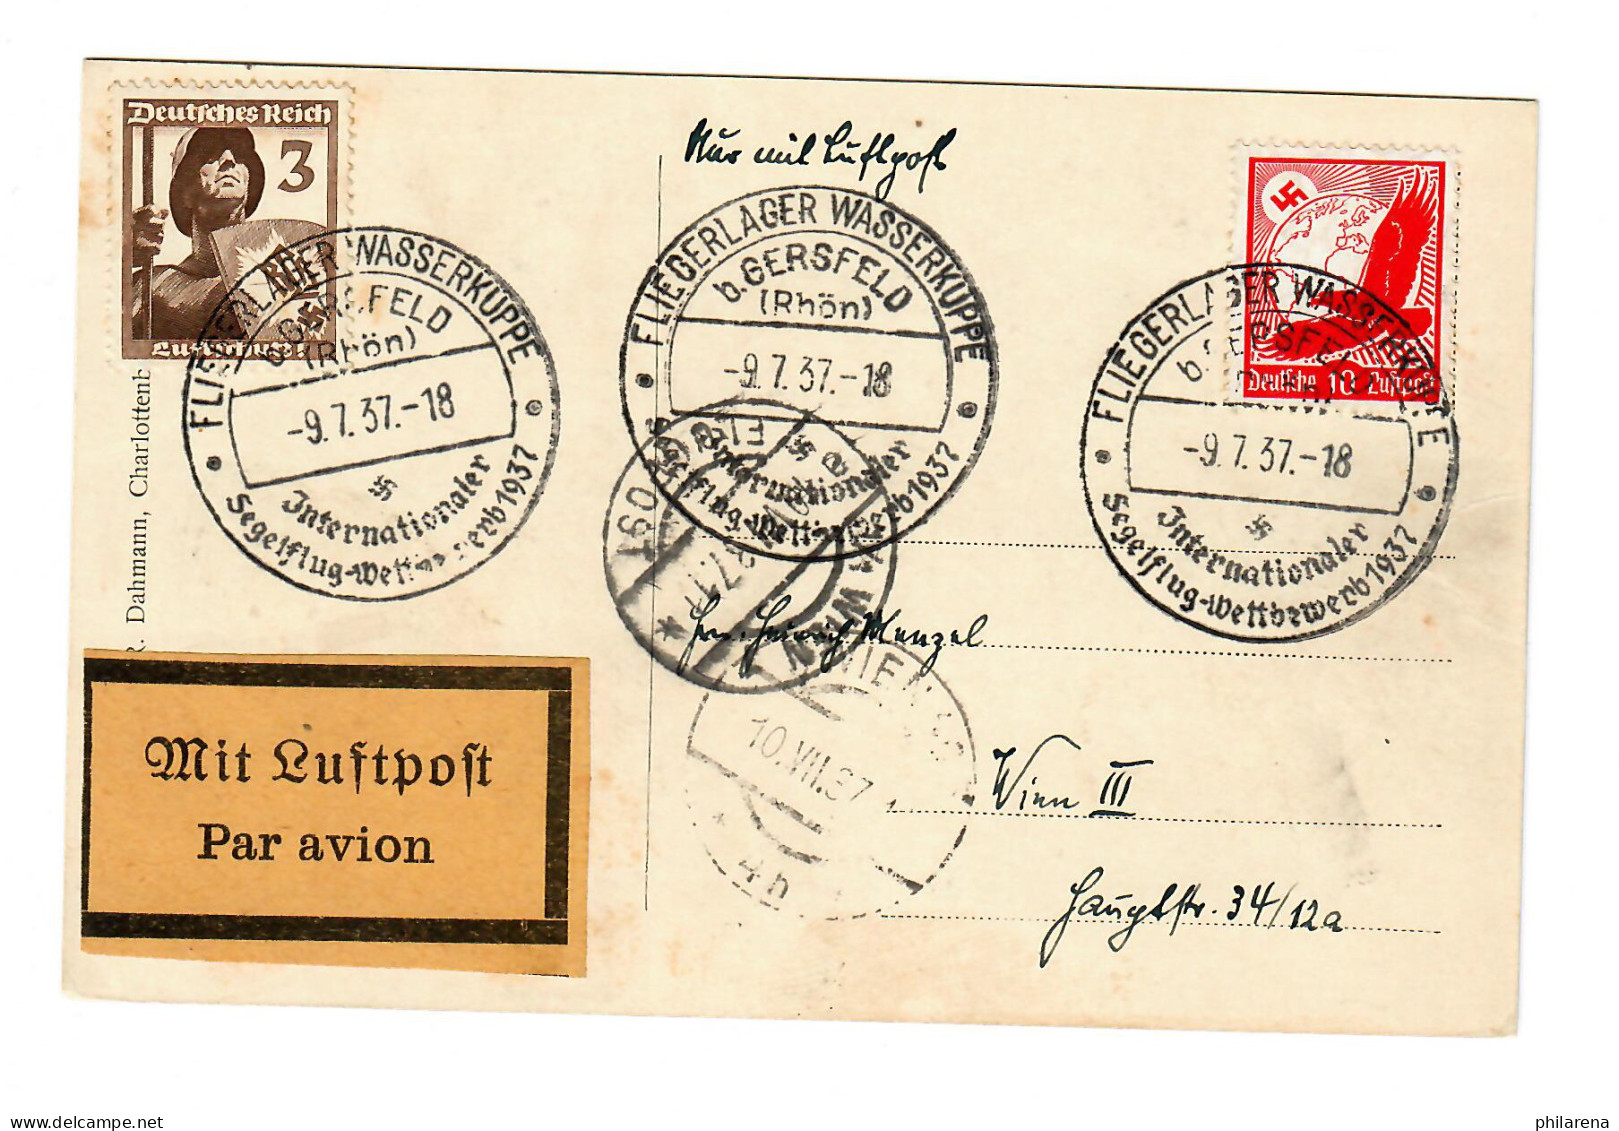 Fliegerlager Wasserkupppe B. Gersfeld/Rhön, Segelflug Wettbewerb 1937, Luftpost - Covers & Documents